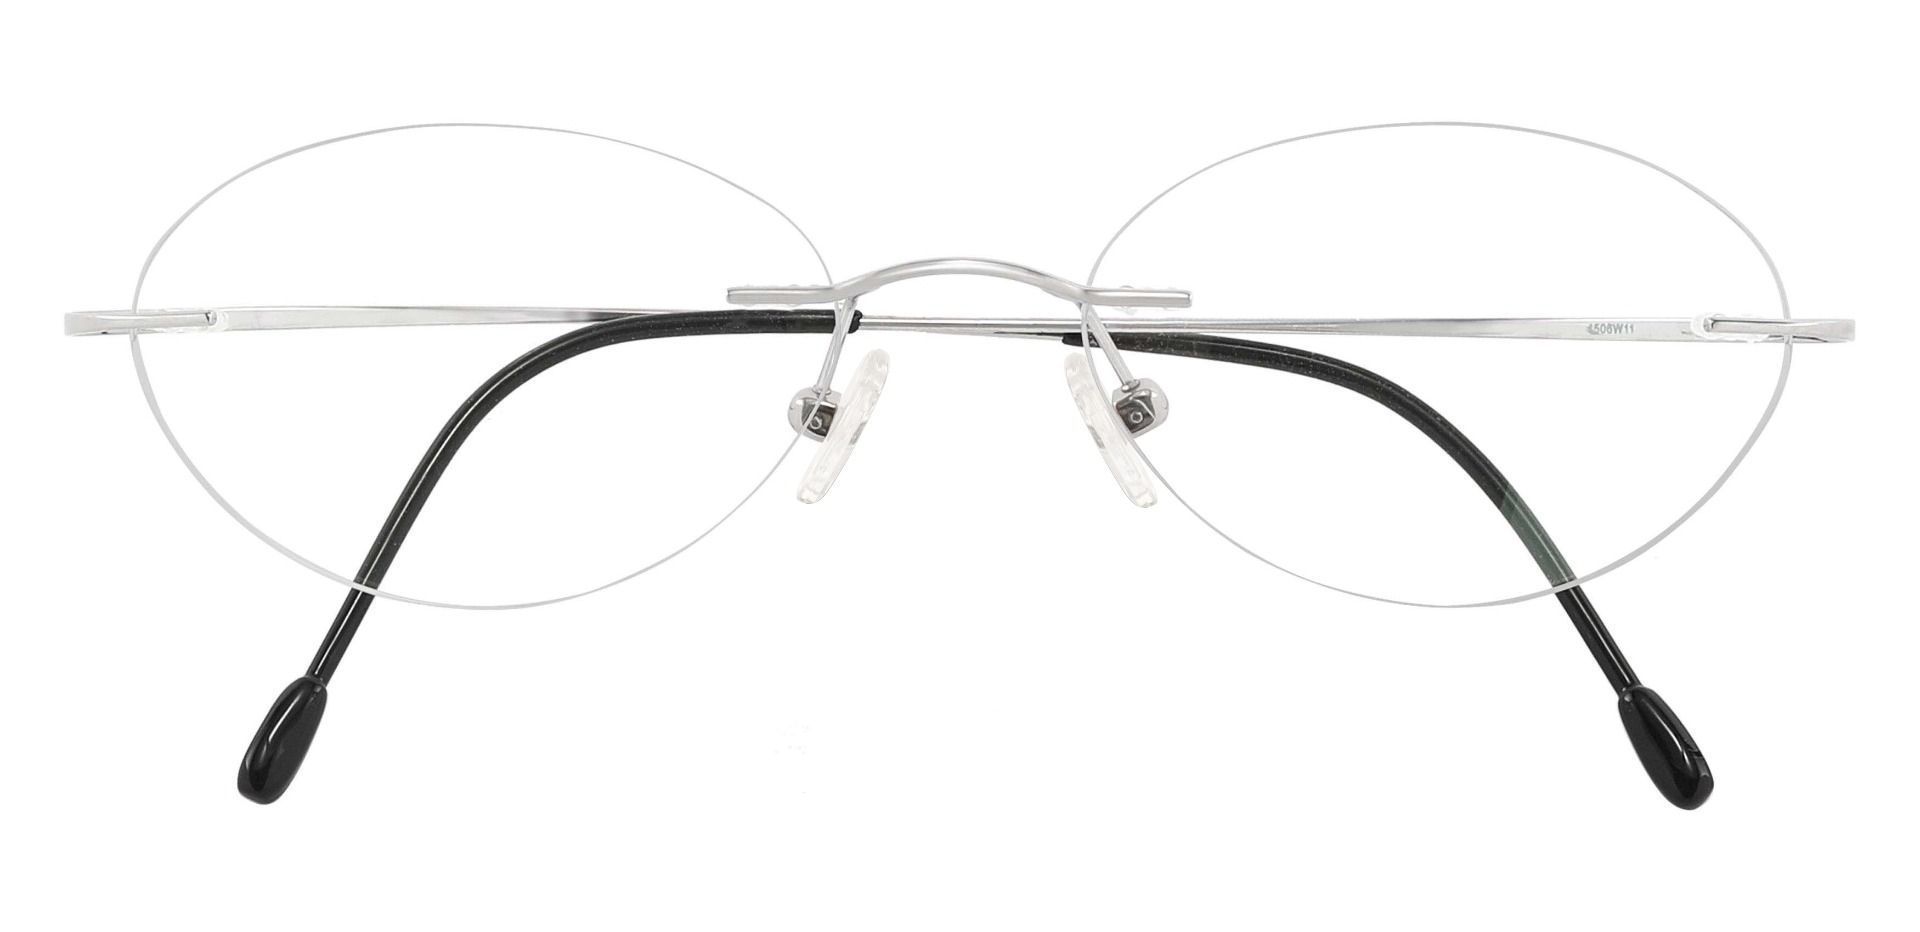 Concordia Rimless Prescription Glasses - Silver